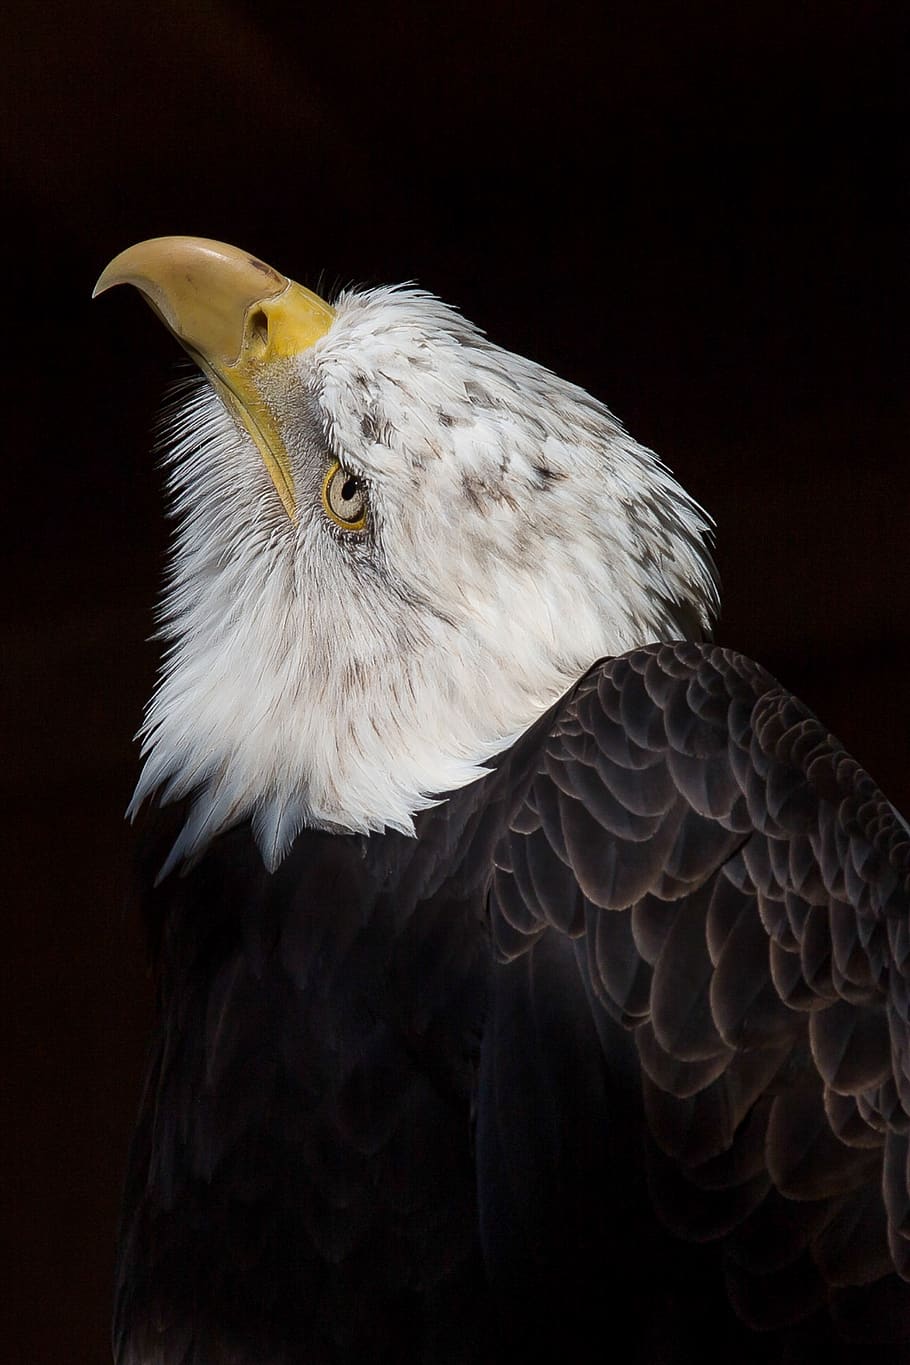 Adler, águila calva, ave, ave de rapiña, rapaz, bill, naturaleza, animal, Estados Unidos, águila de cola blanca